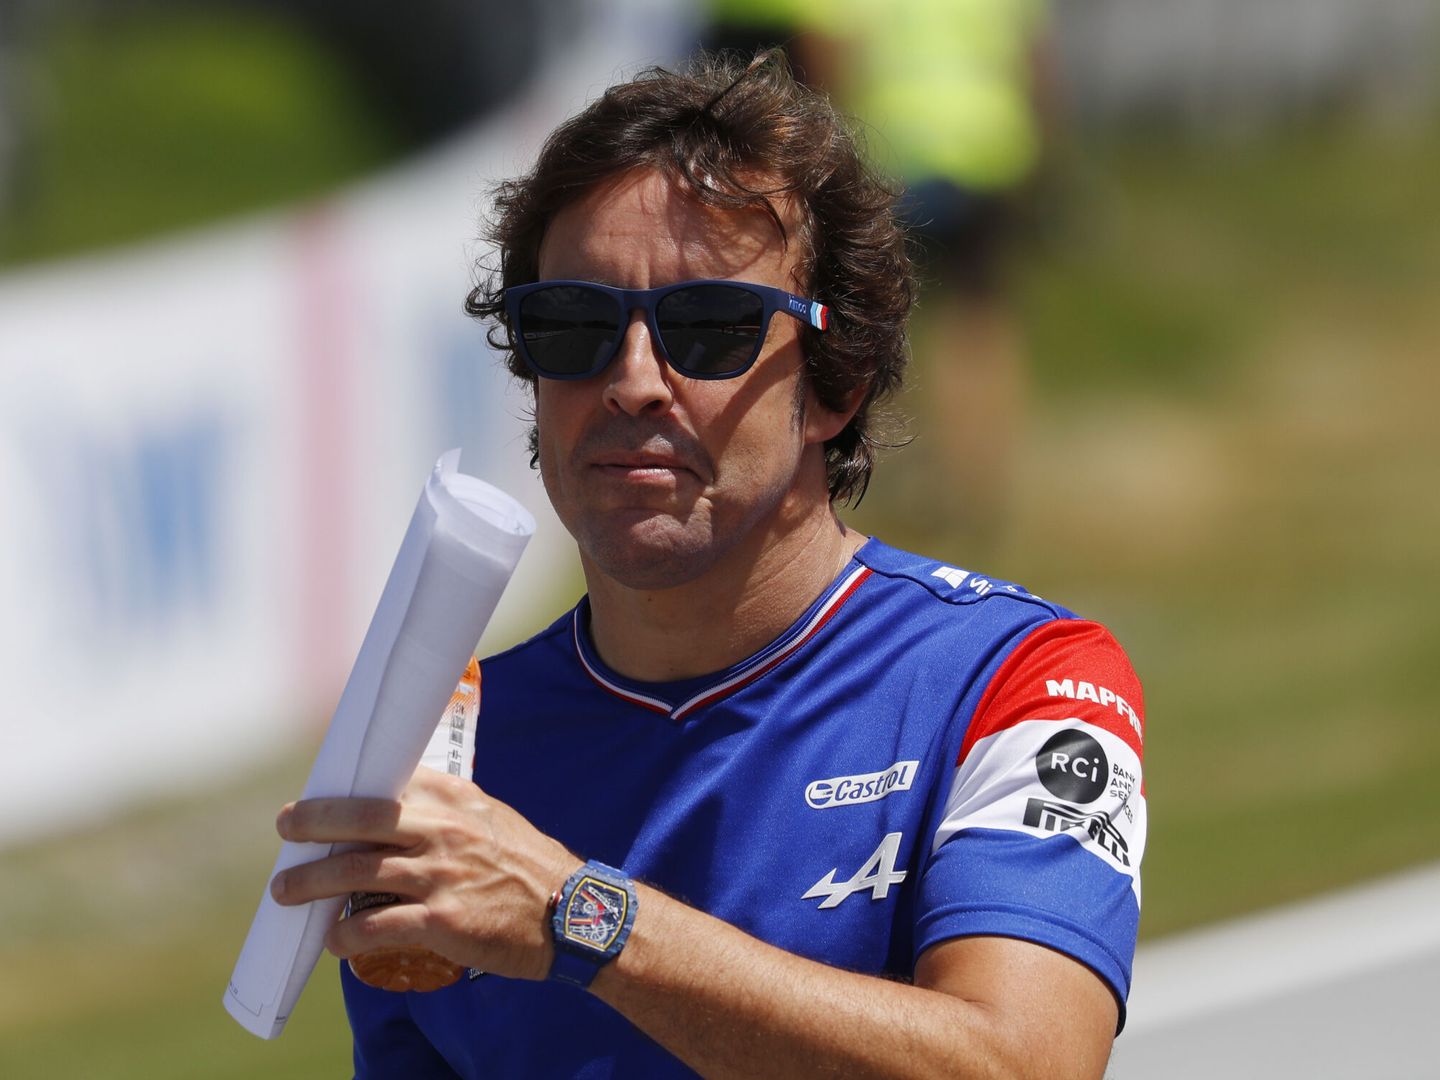 Fernando Alonso reconoce que, aunque sea corta, la pista de Austria le gusta